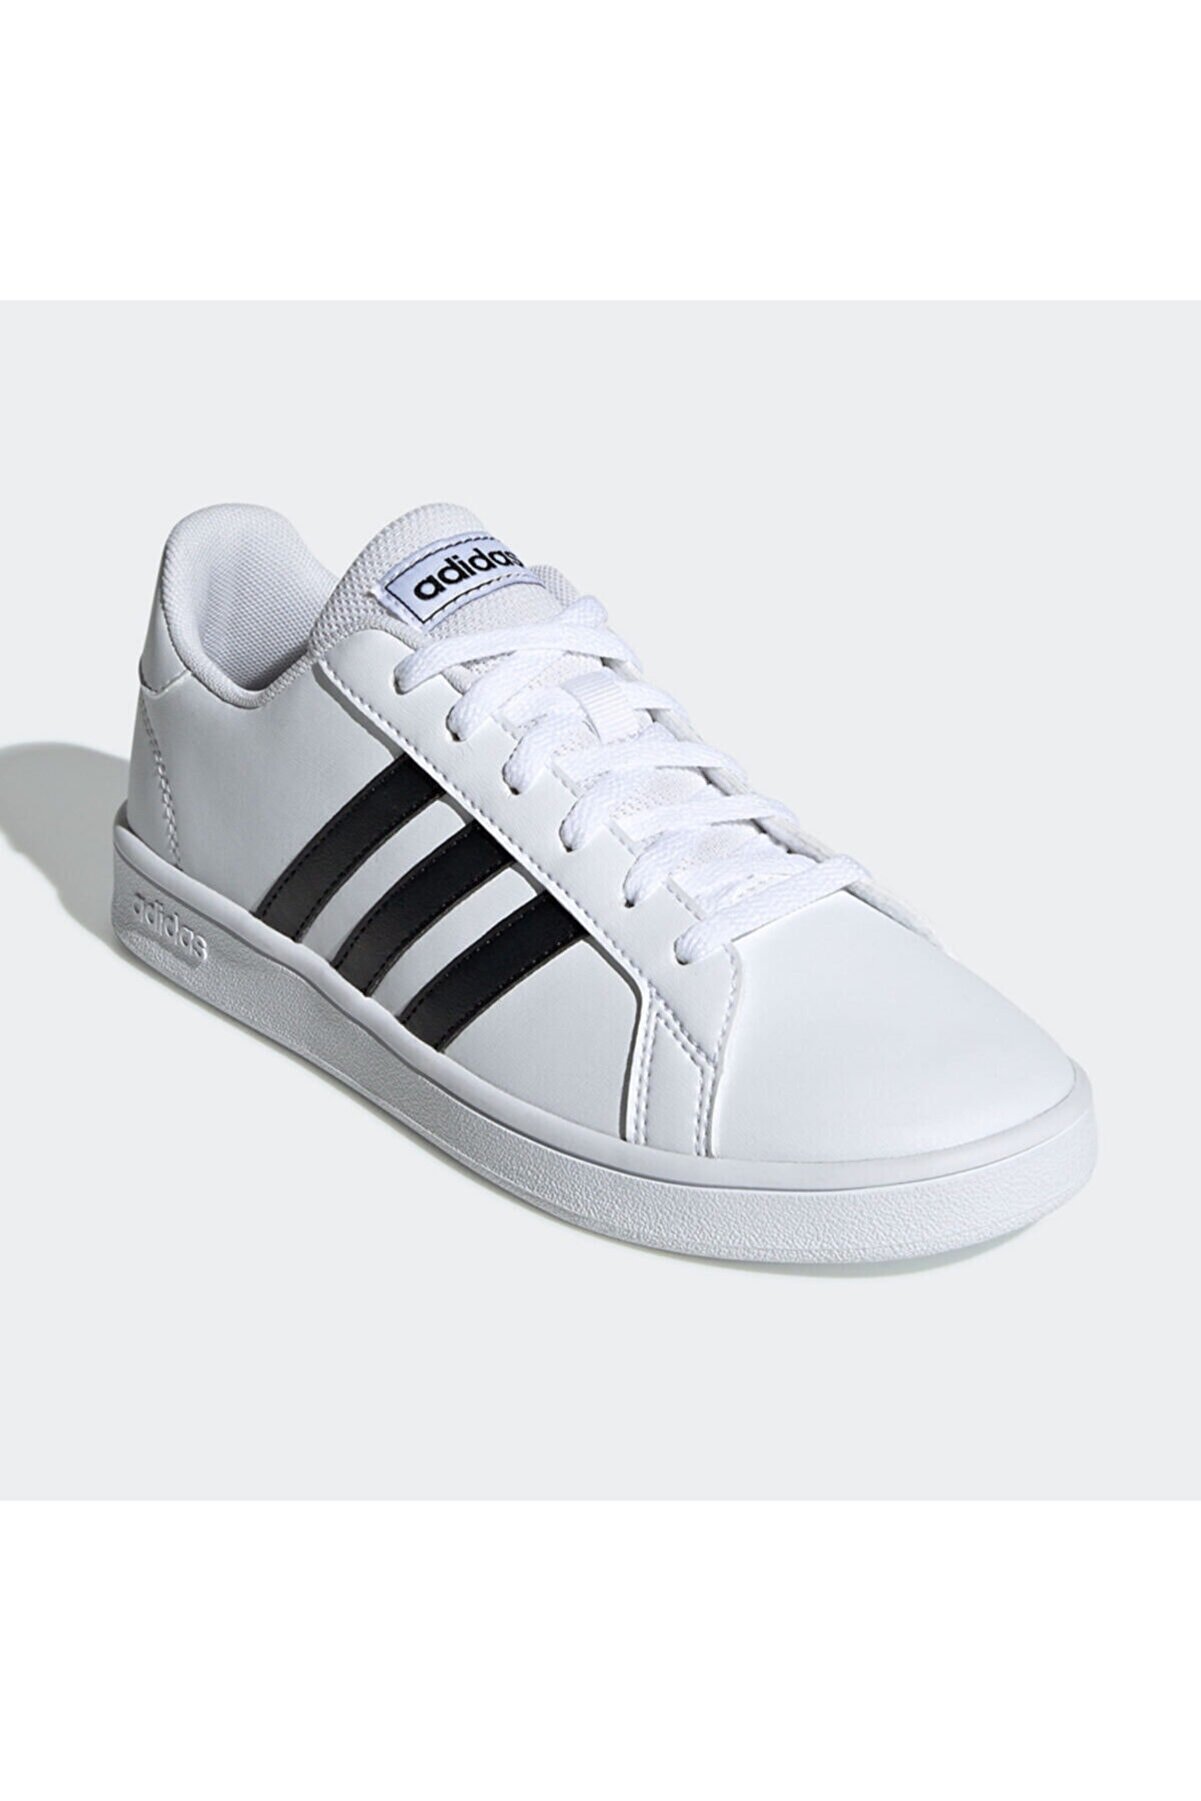 adidas Grand Court Beyaz Erkek Çocuk Sneaker Ayakkabı